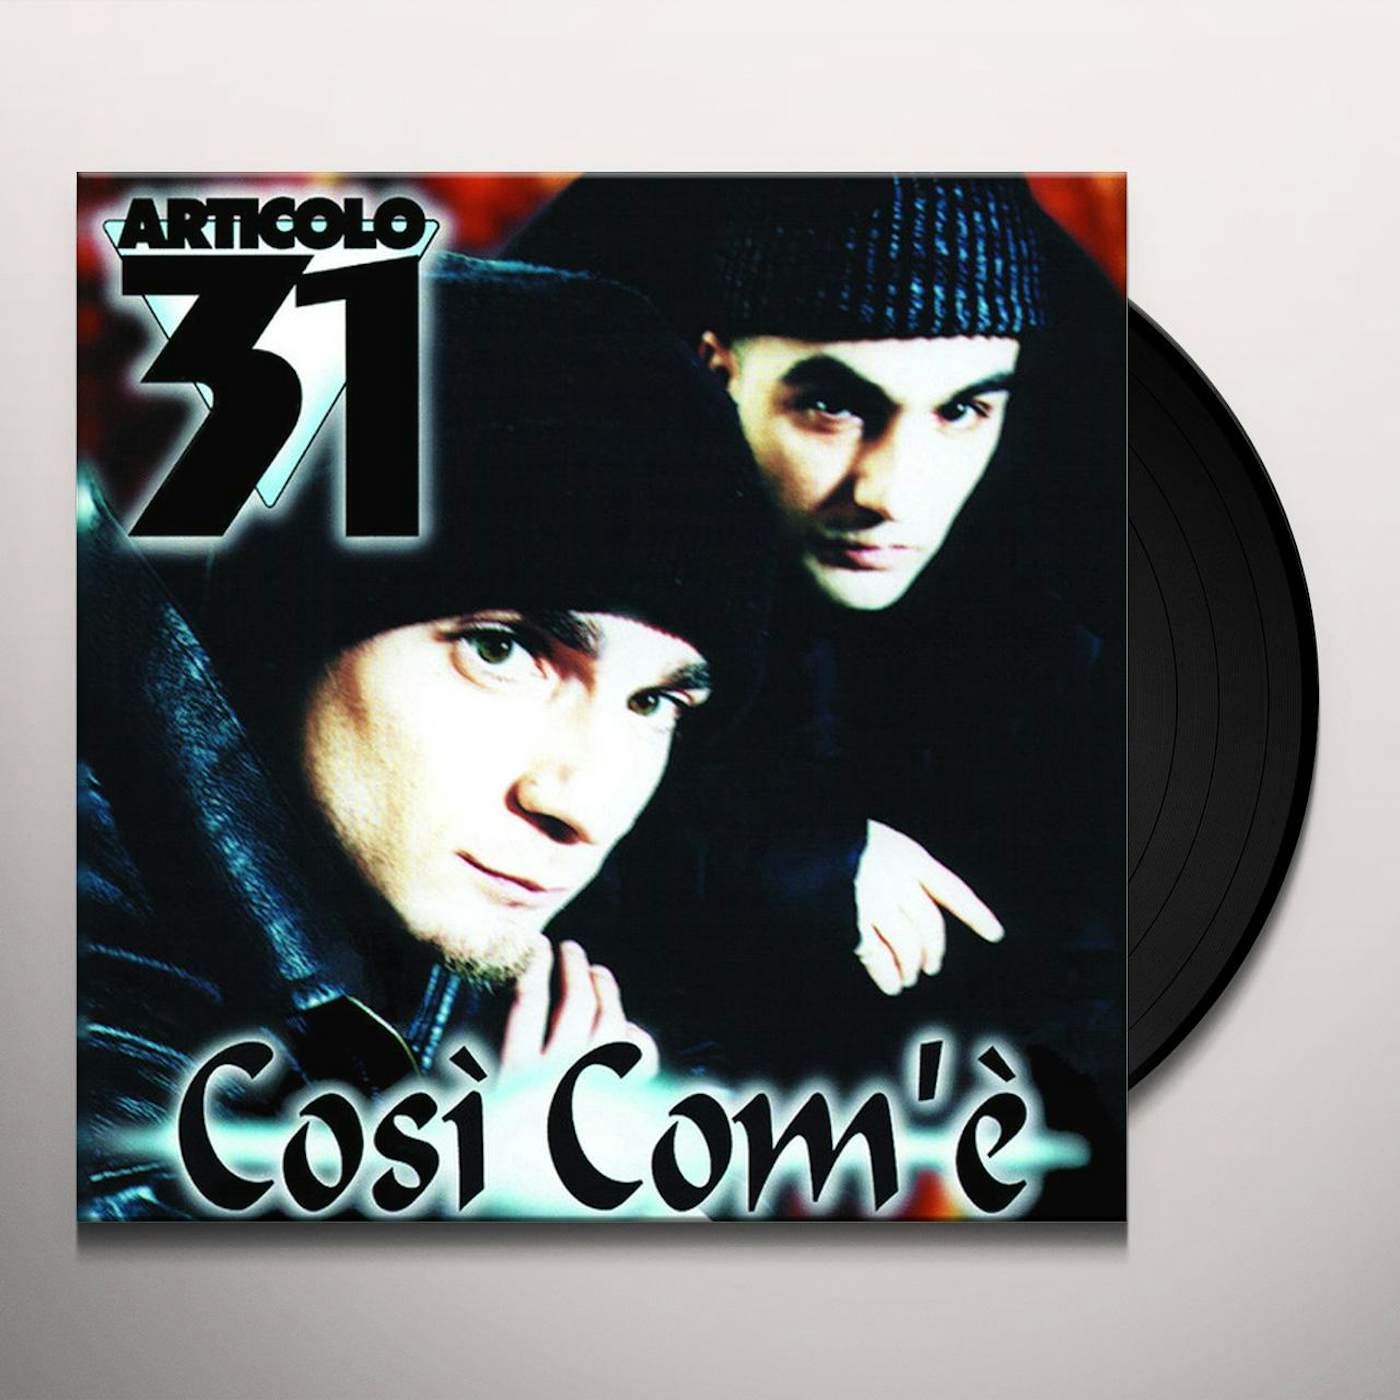 Articolo 31 COSI COM'E Vinyl Record